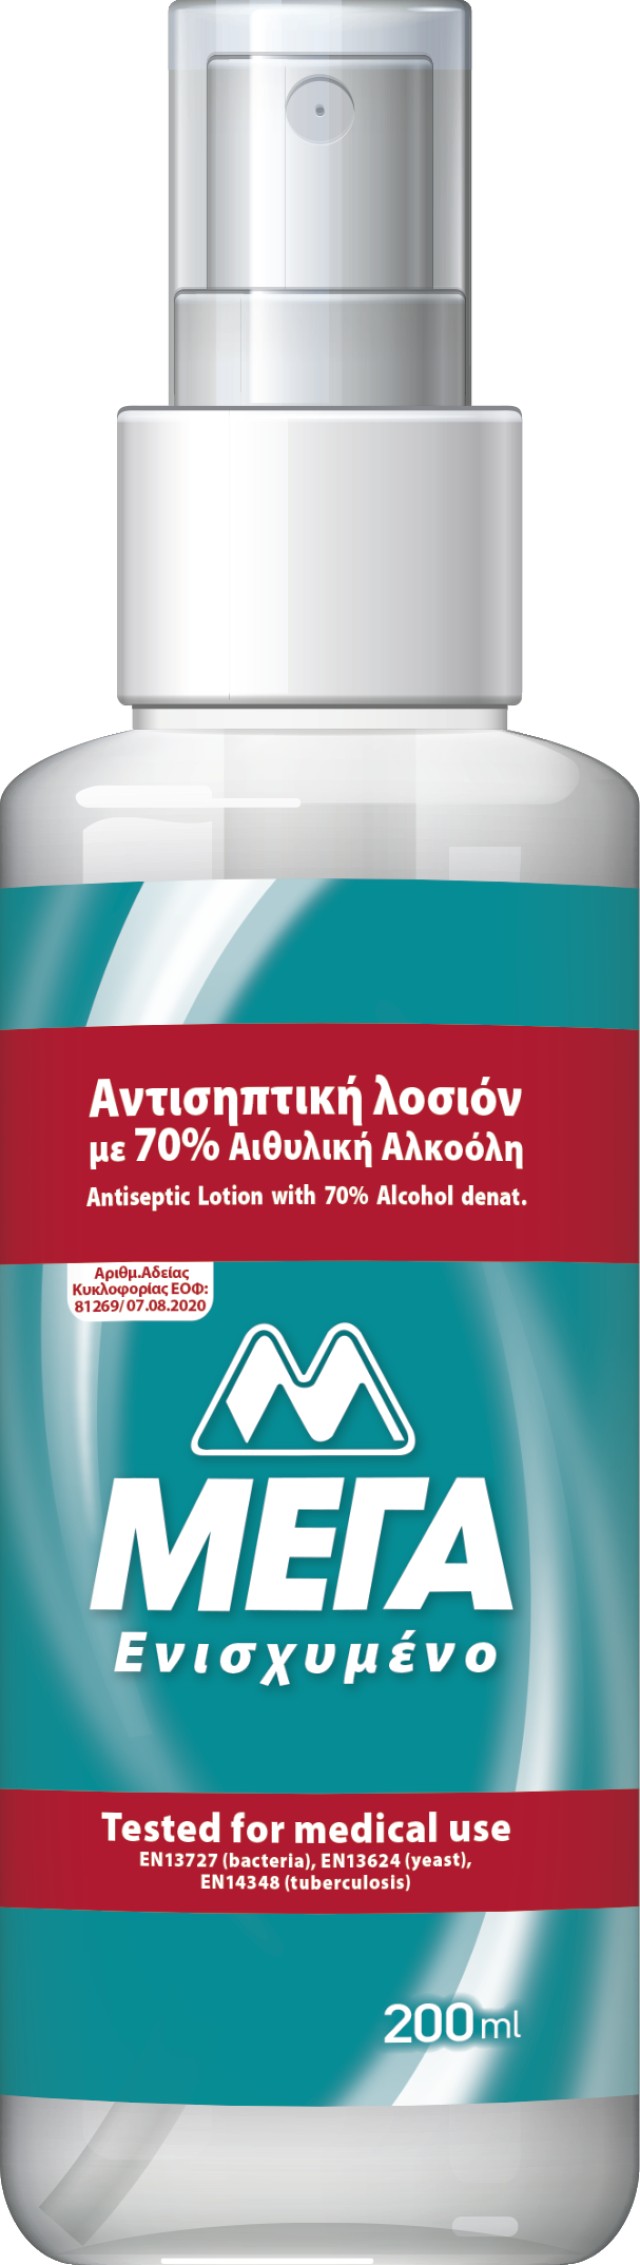 ΜΕΓΑ Αντισηπτική Λοσιόν Xεριών με 70% Αιθυλική Αλκοόλη σε Μορφή Σπρέι 200ml